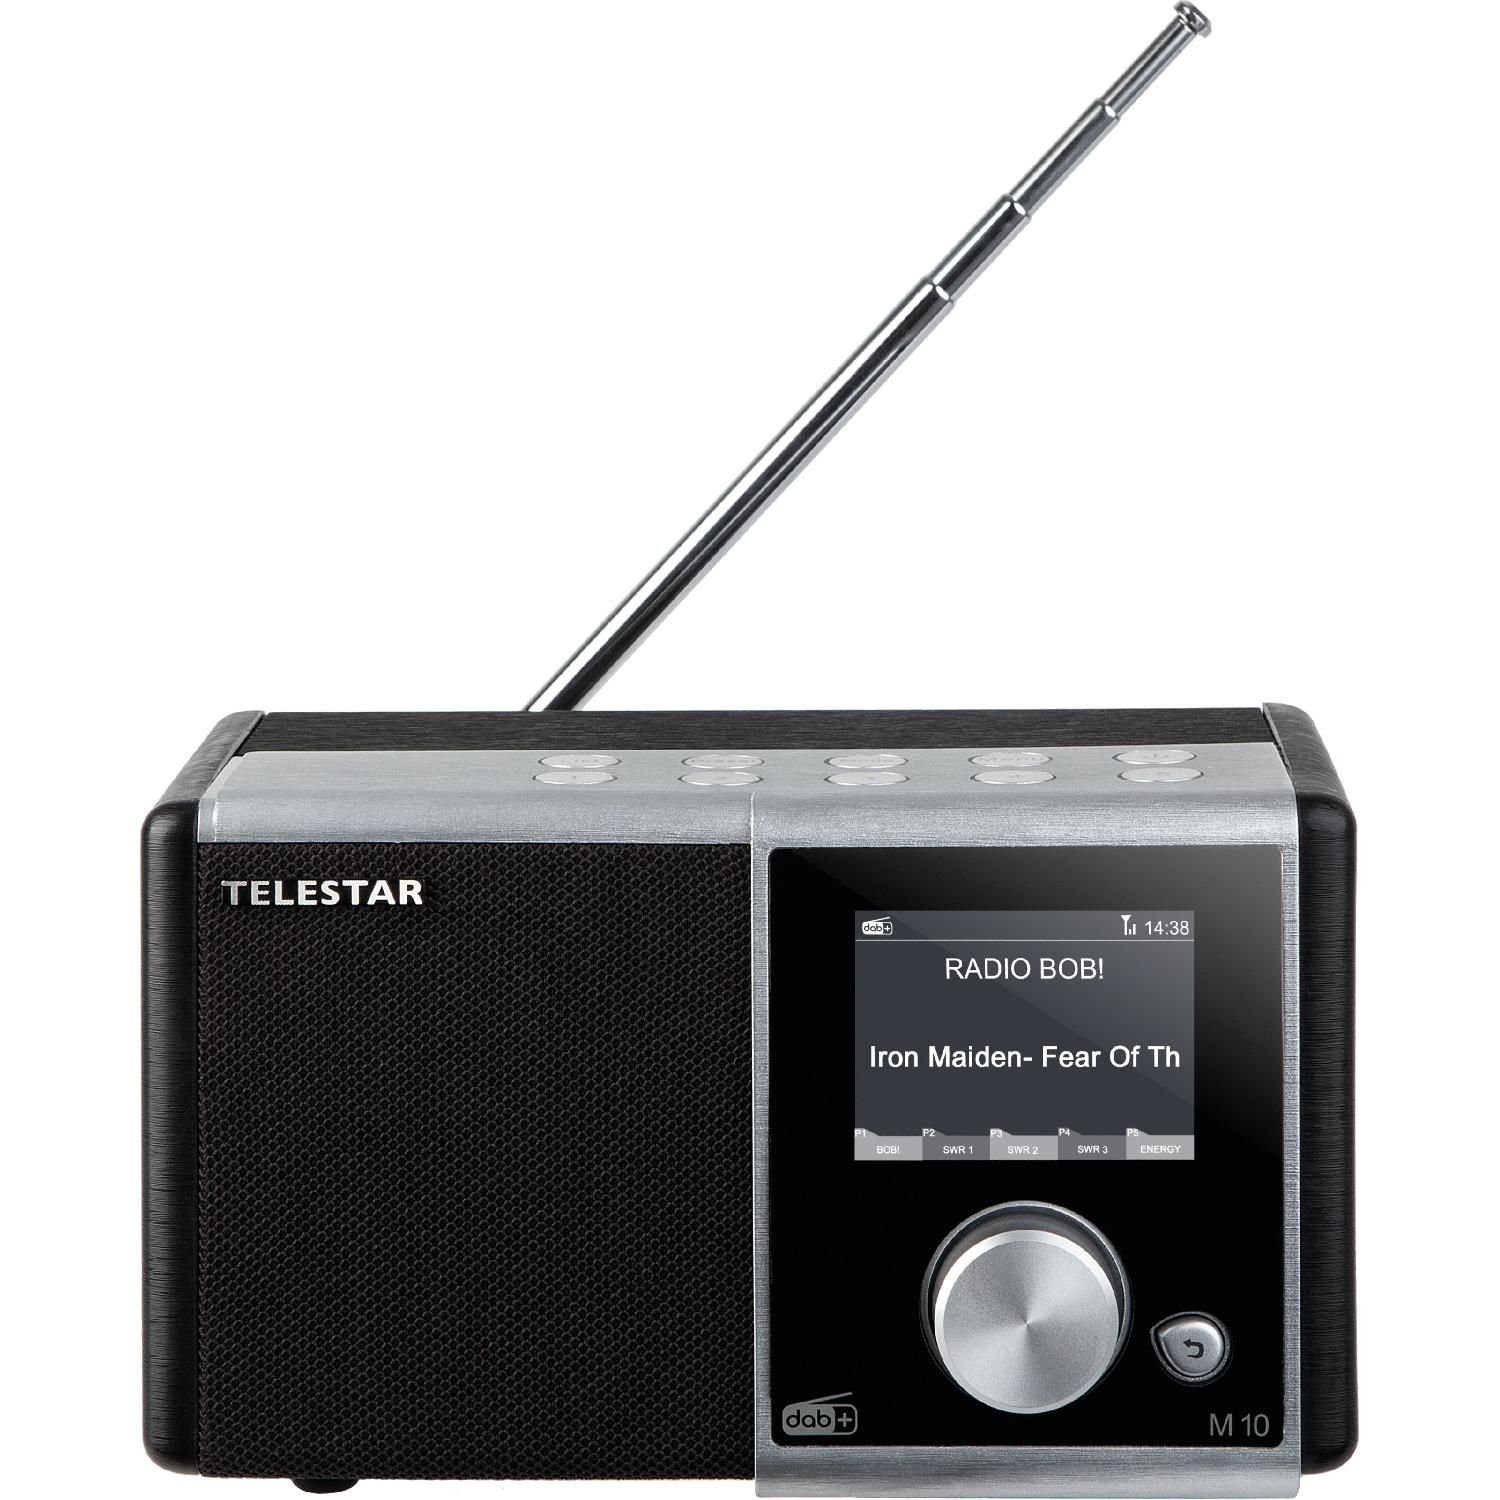 TELESTAR DIRA M 10 Digitalradio DAB+/UKW Empfang USB Speichertasten  Digitalradio (DAB) (DAB+, UKW, 15 W, Speicherplatz für je 10 DAB+/UKW  Sender und 5 Presettasten am Gerät)